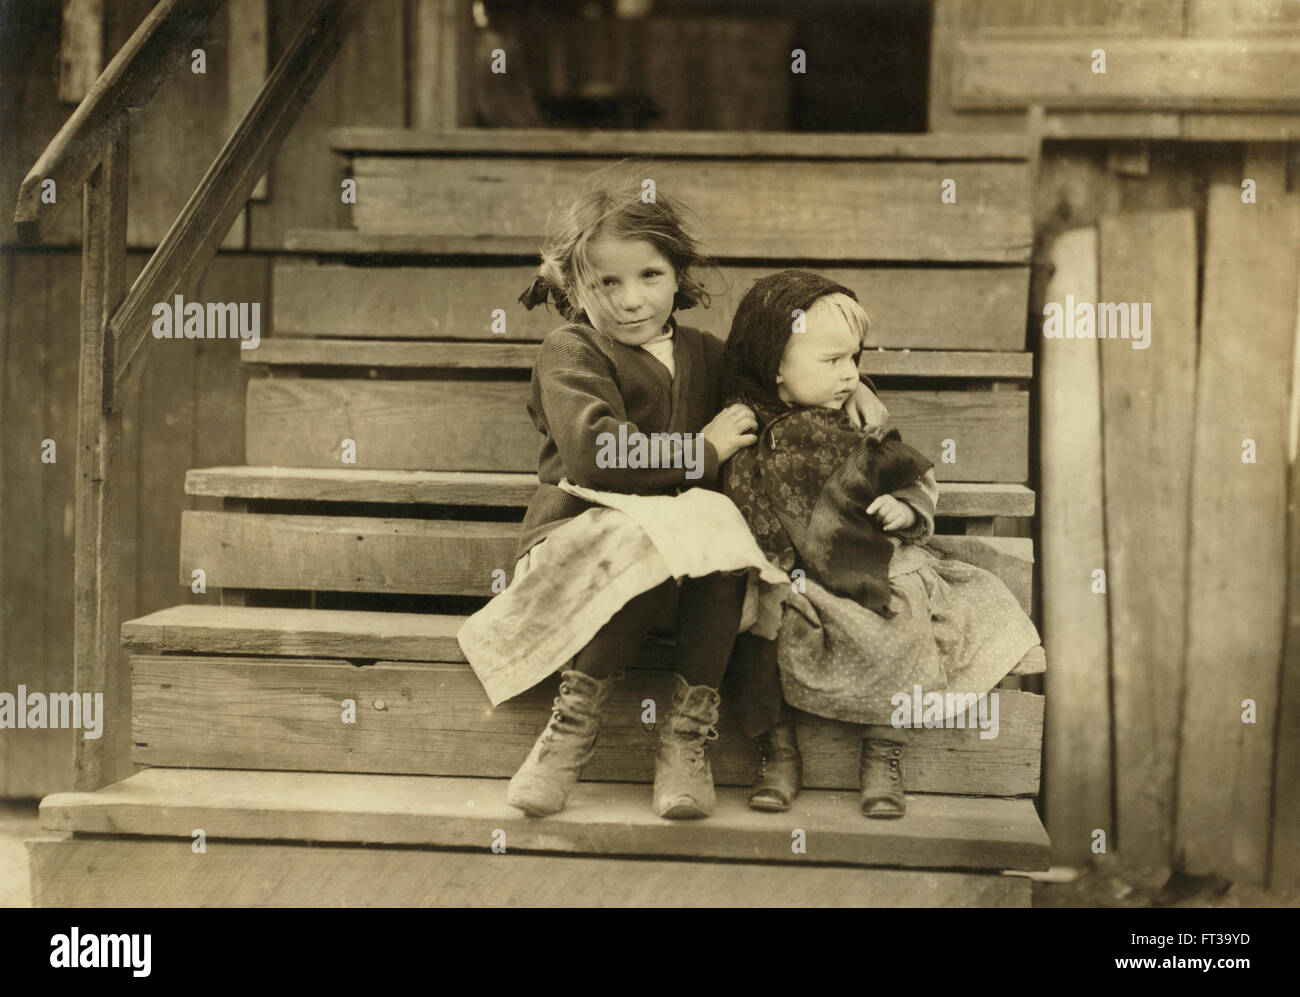 Portrait Jeune fille en prenant soin de petite Sœur tandis que reste famille travaille conserverie locale Bayou La Batre Alabama USA vers 1911 Banque D'Images